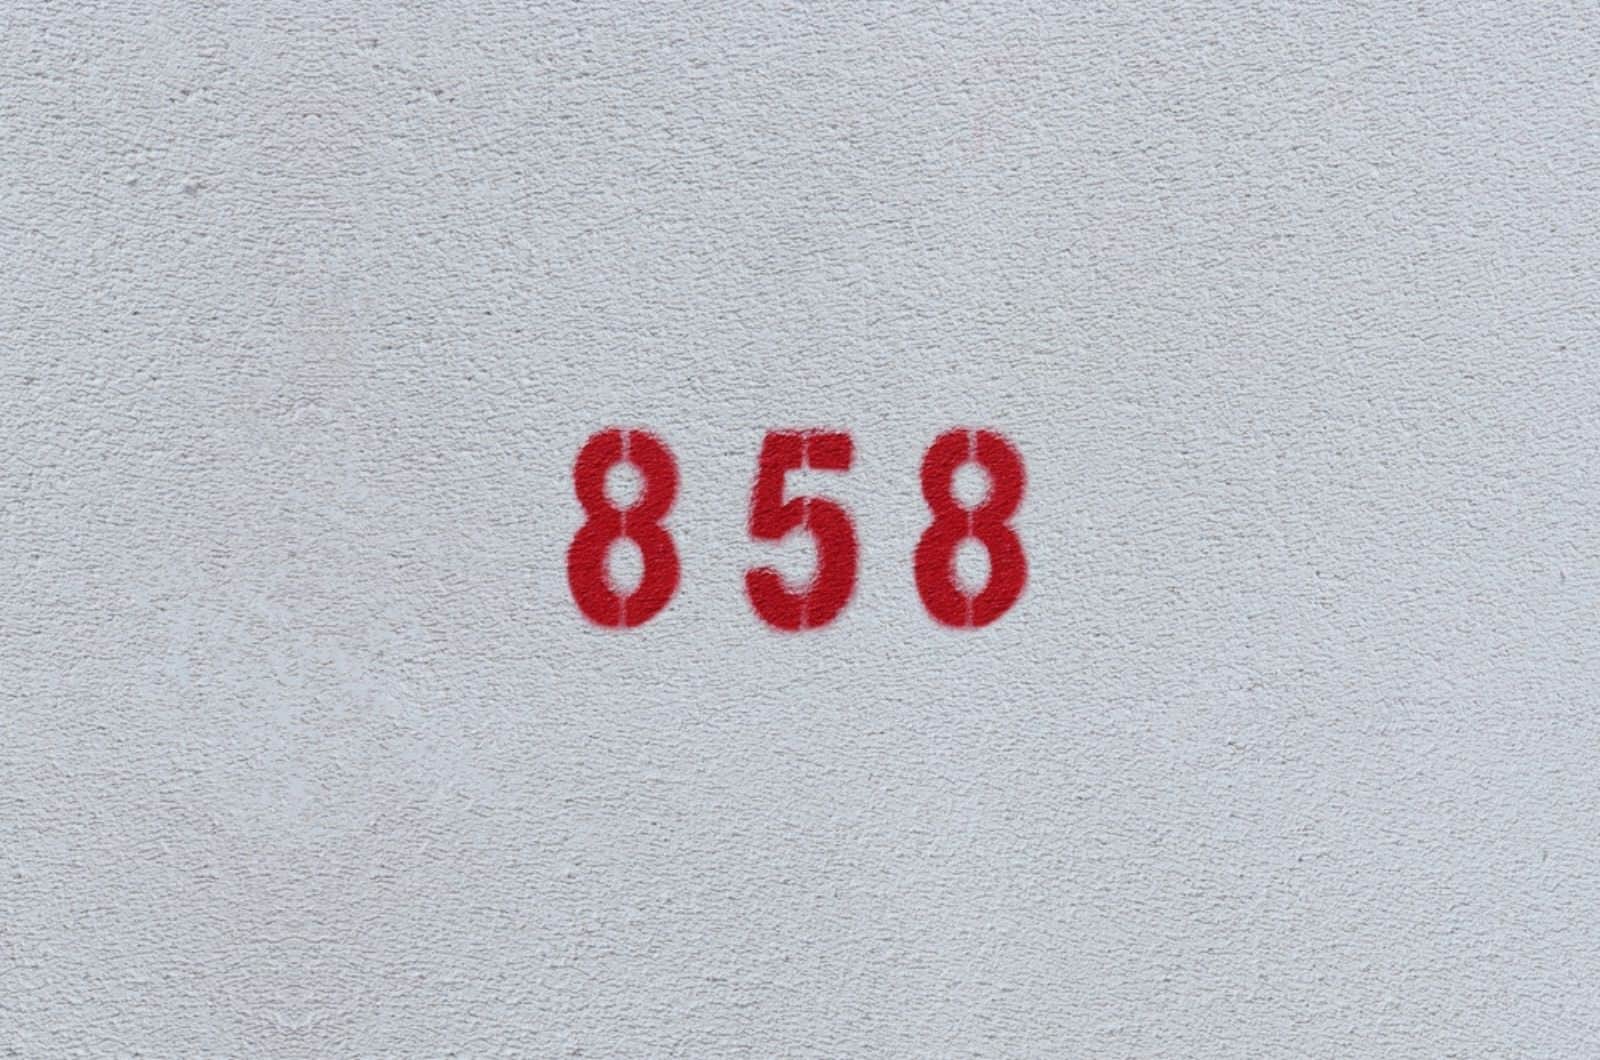 ROJO Número 858 en la pared blanca